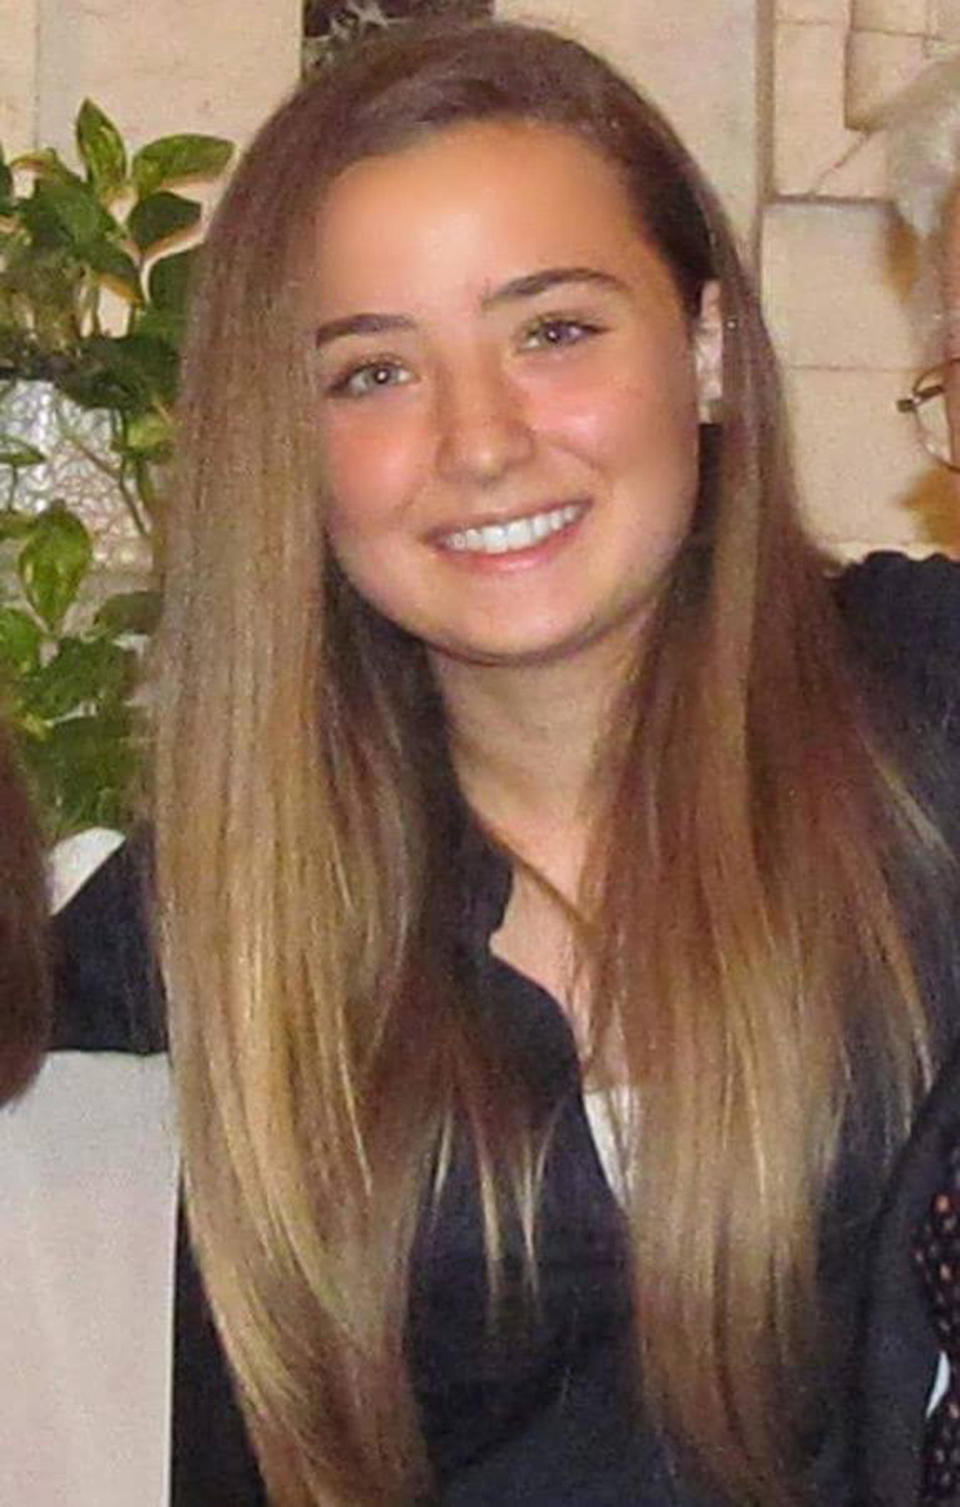 Una foto di Camilla Canepa presa dal suo profilo Facebook. La 18enne di Sestri Levante ricoverata domenica al S.Martino di Genova dopo una trombosi al seno cavernoso e operata per la rimozione del trombo e ridurre la pressione intracranica, è morta. Era stata vaccinata con AstraZeneca il 25 maggio nell'open day per gli over 18. PROFILO FACEBOOK CAMILLA CANEPA ++ ATTENZIONE LA FOTO NON PUO' ESSERE PUBBLICATA O RIPRODOTTA SENZA L'AUTORIZZAZIONE DELLA FONTE DI ORIGINE CUI SI RINVIA+++  ++HO  NO SALES EDITORIAL USE ONLY++ (Photo: FACEBOOK  CAMILLA CANEPAANSA)